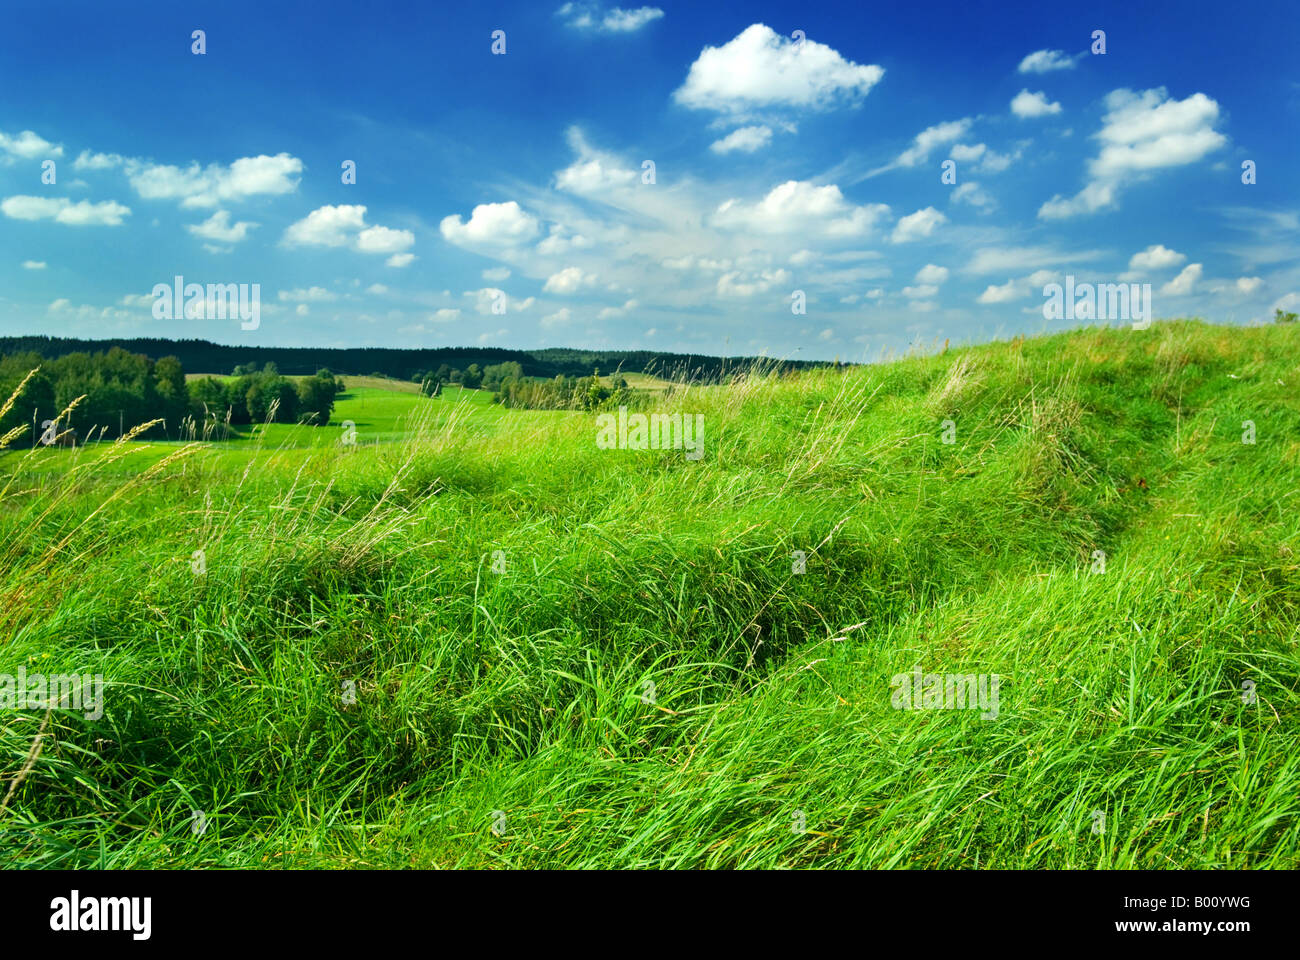 Gesättigt Sommer Landschaft - grüner Rasen auf dem Hügel. Masuren, Polen. Stockfoto